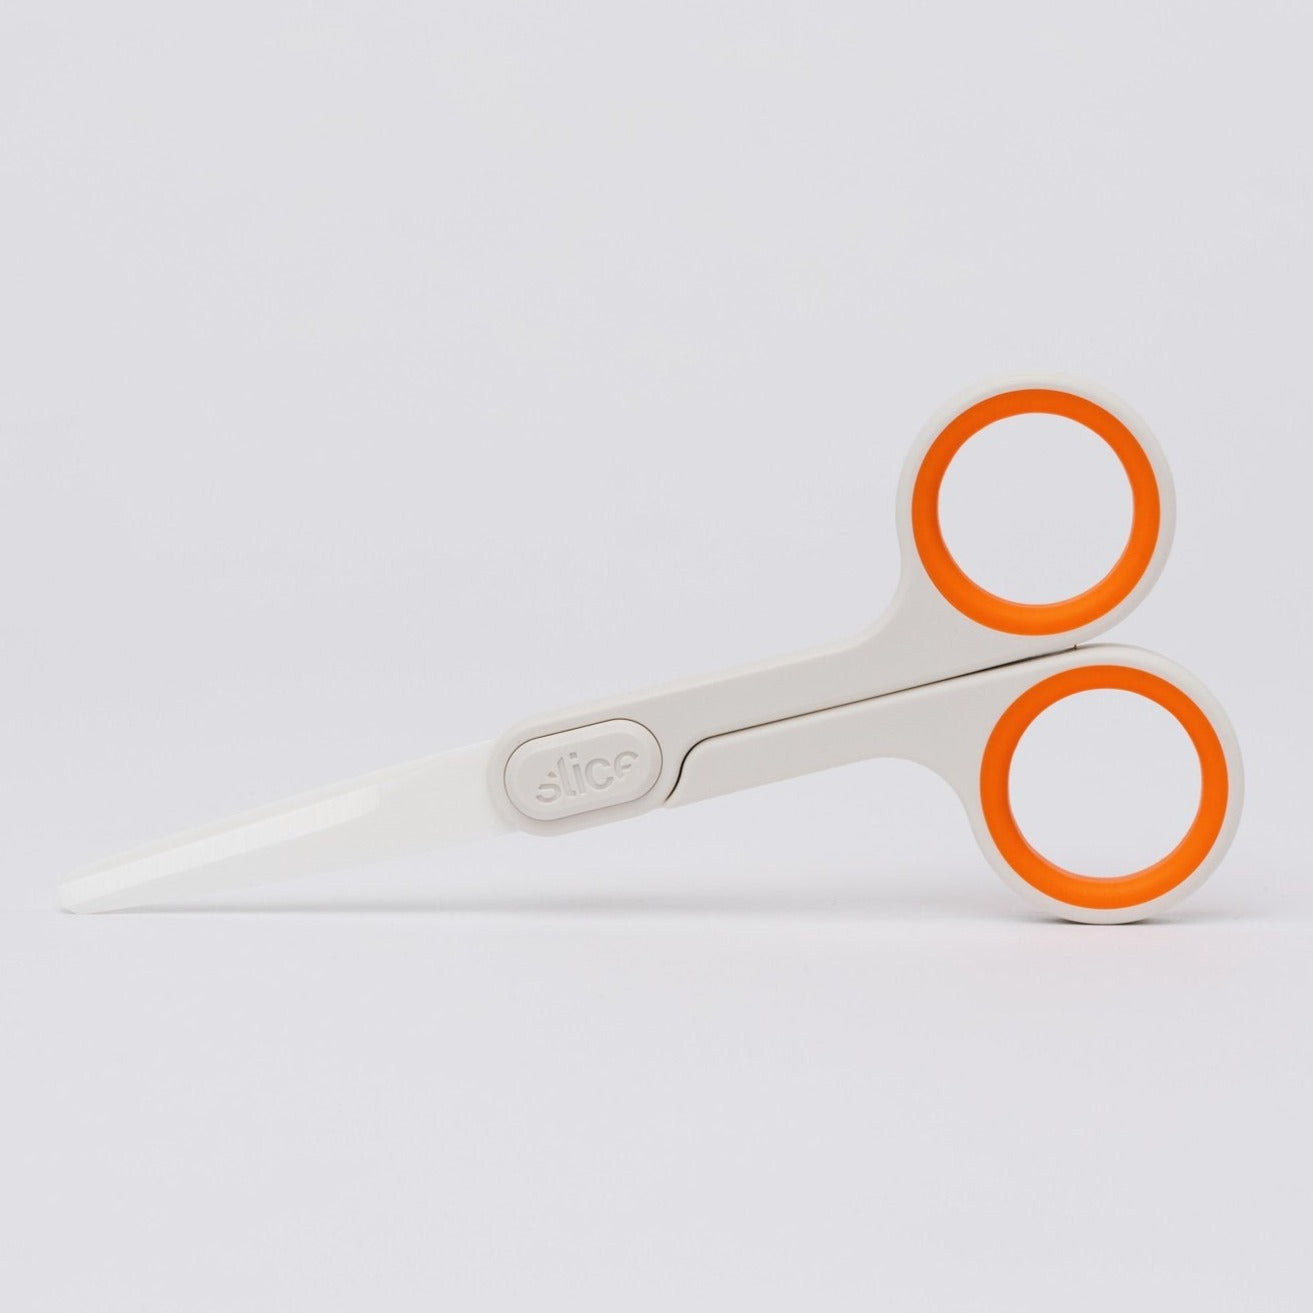 140 mm, Scissors / Small (Made of ceramic), ESCO